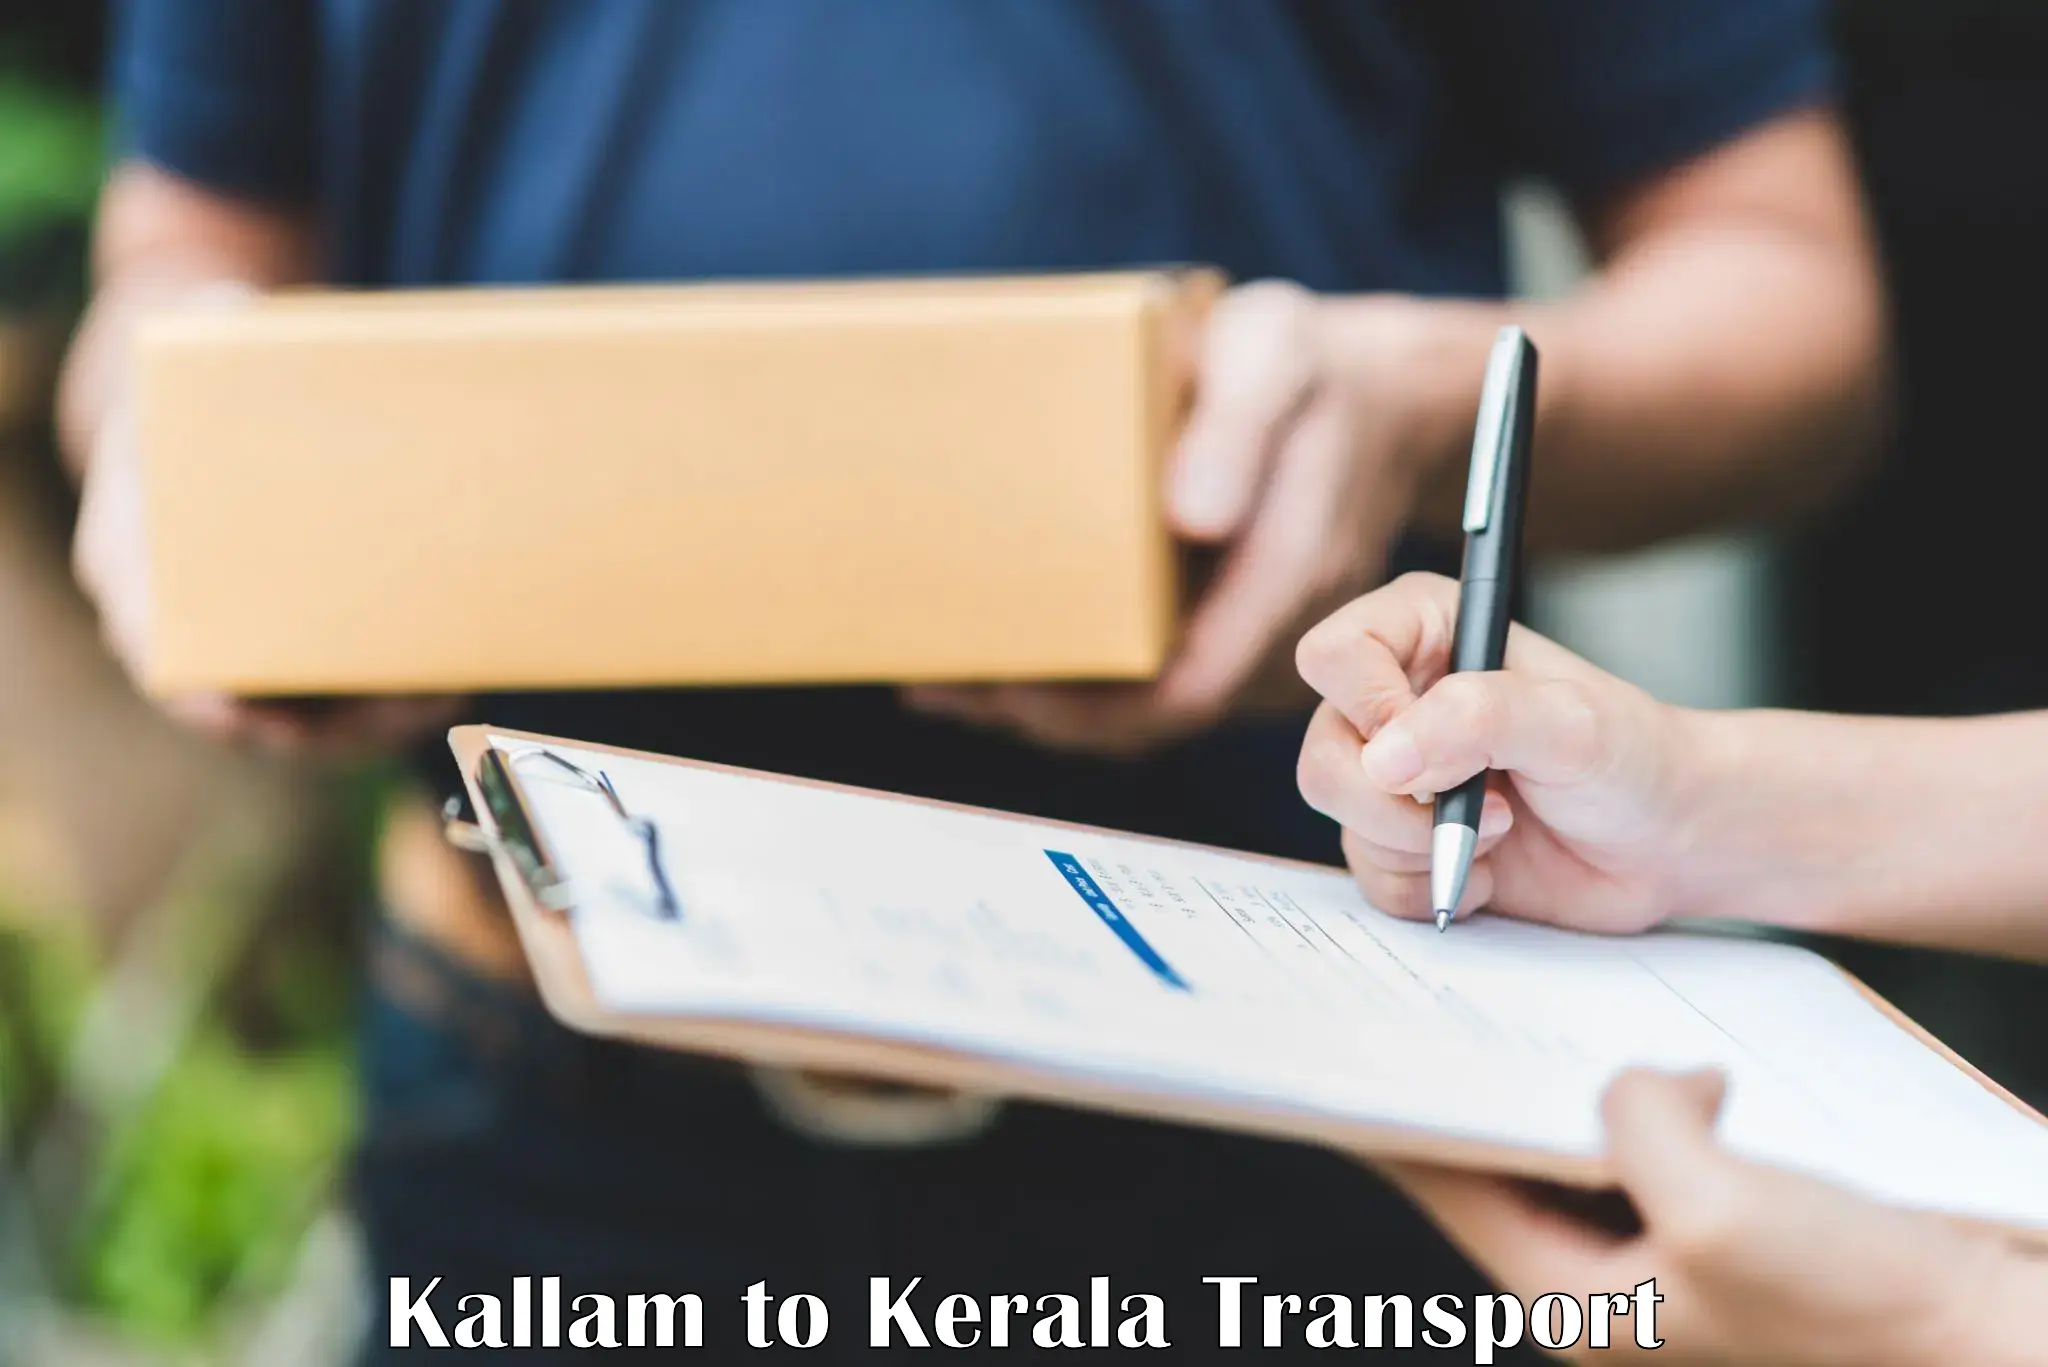 International cargo transportation services Kallam to IIT Palakkad